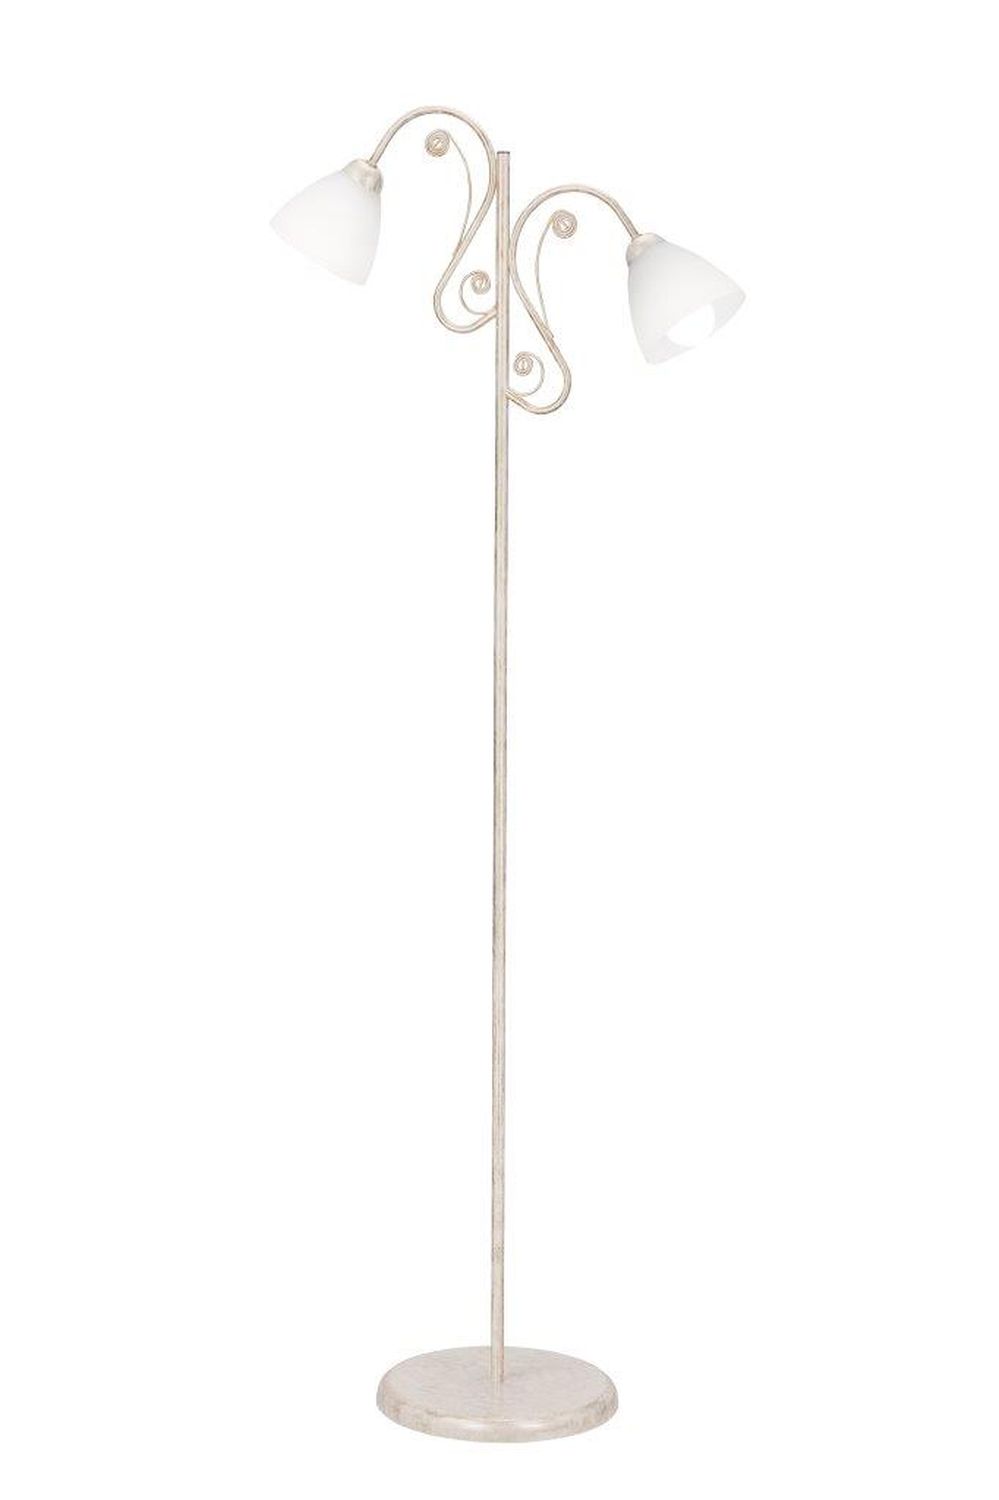 Stehlampe Shabby Weiß Rustikal 150cm Wohnzimmer